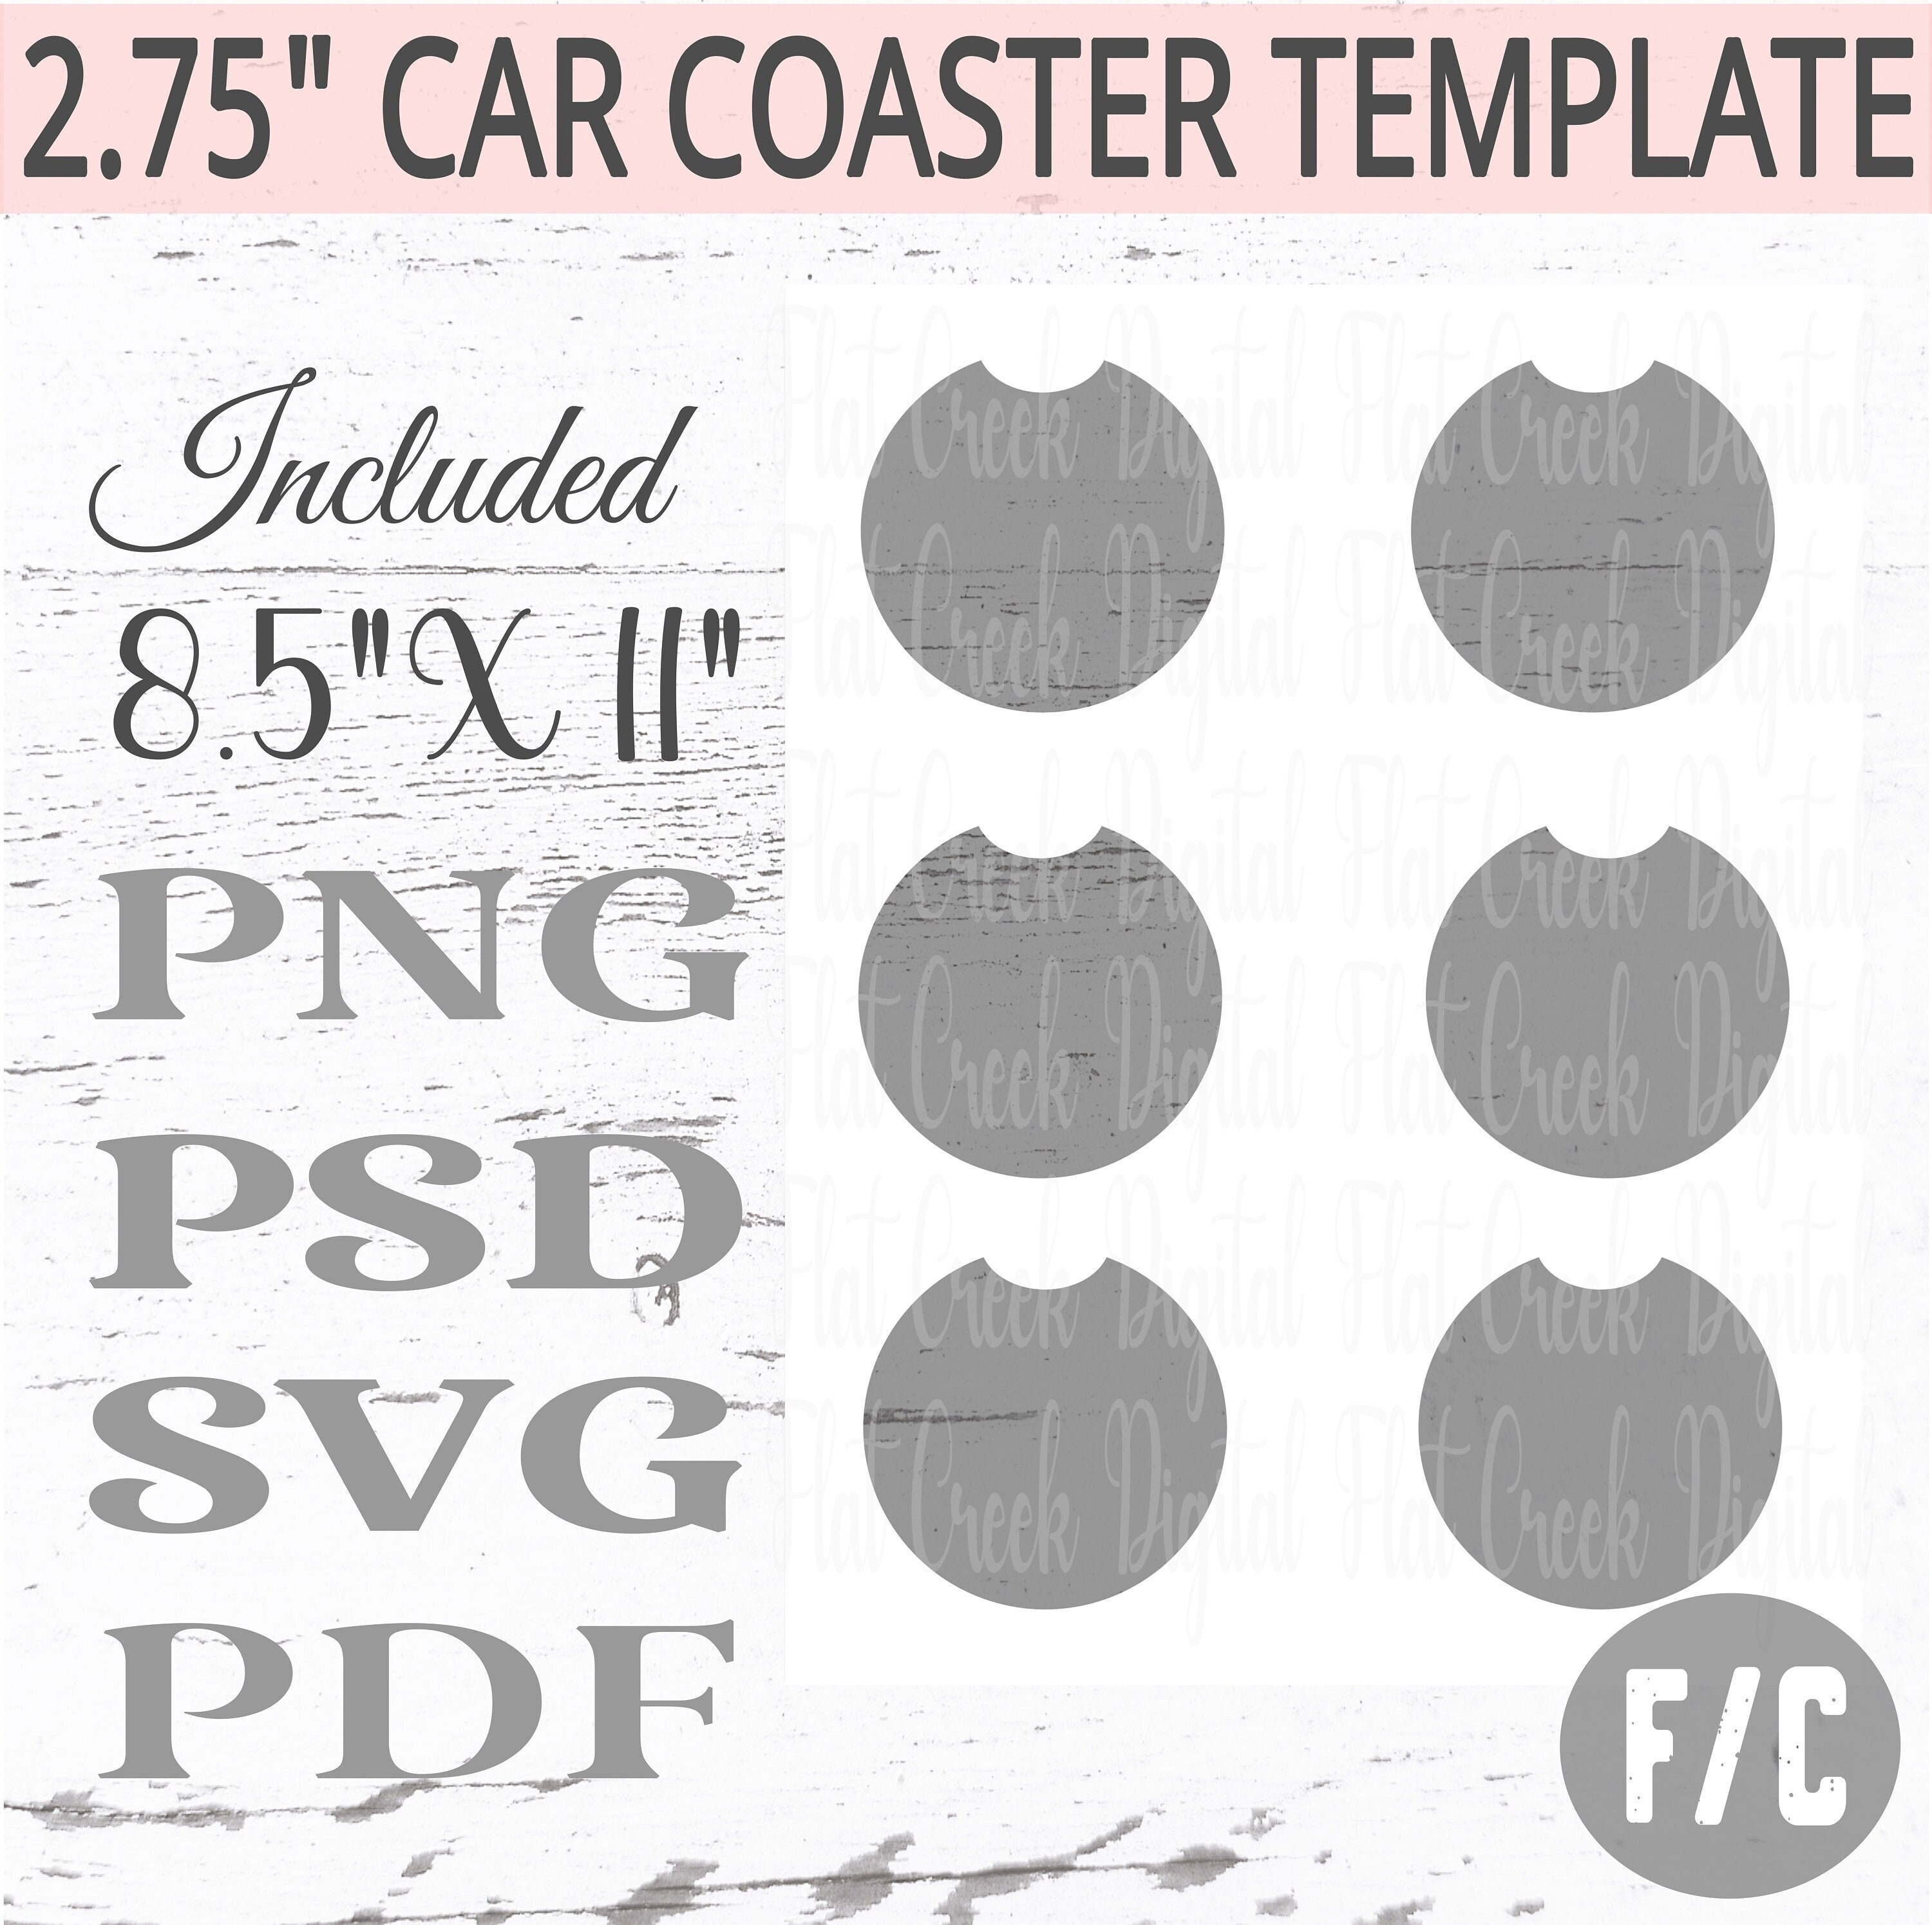 Car Coaster Sublimation Bundle, Keyring Design PNG (1599669)